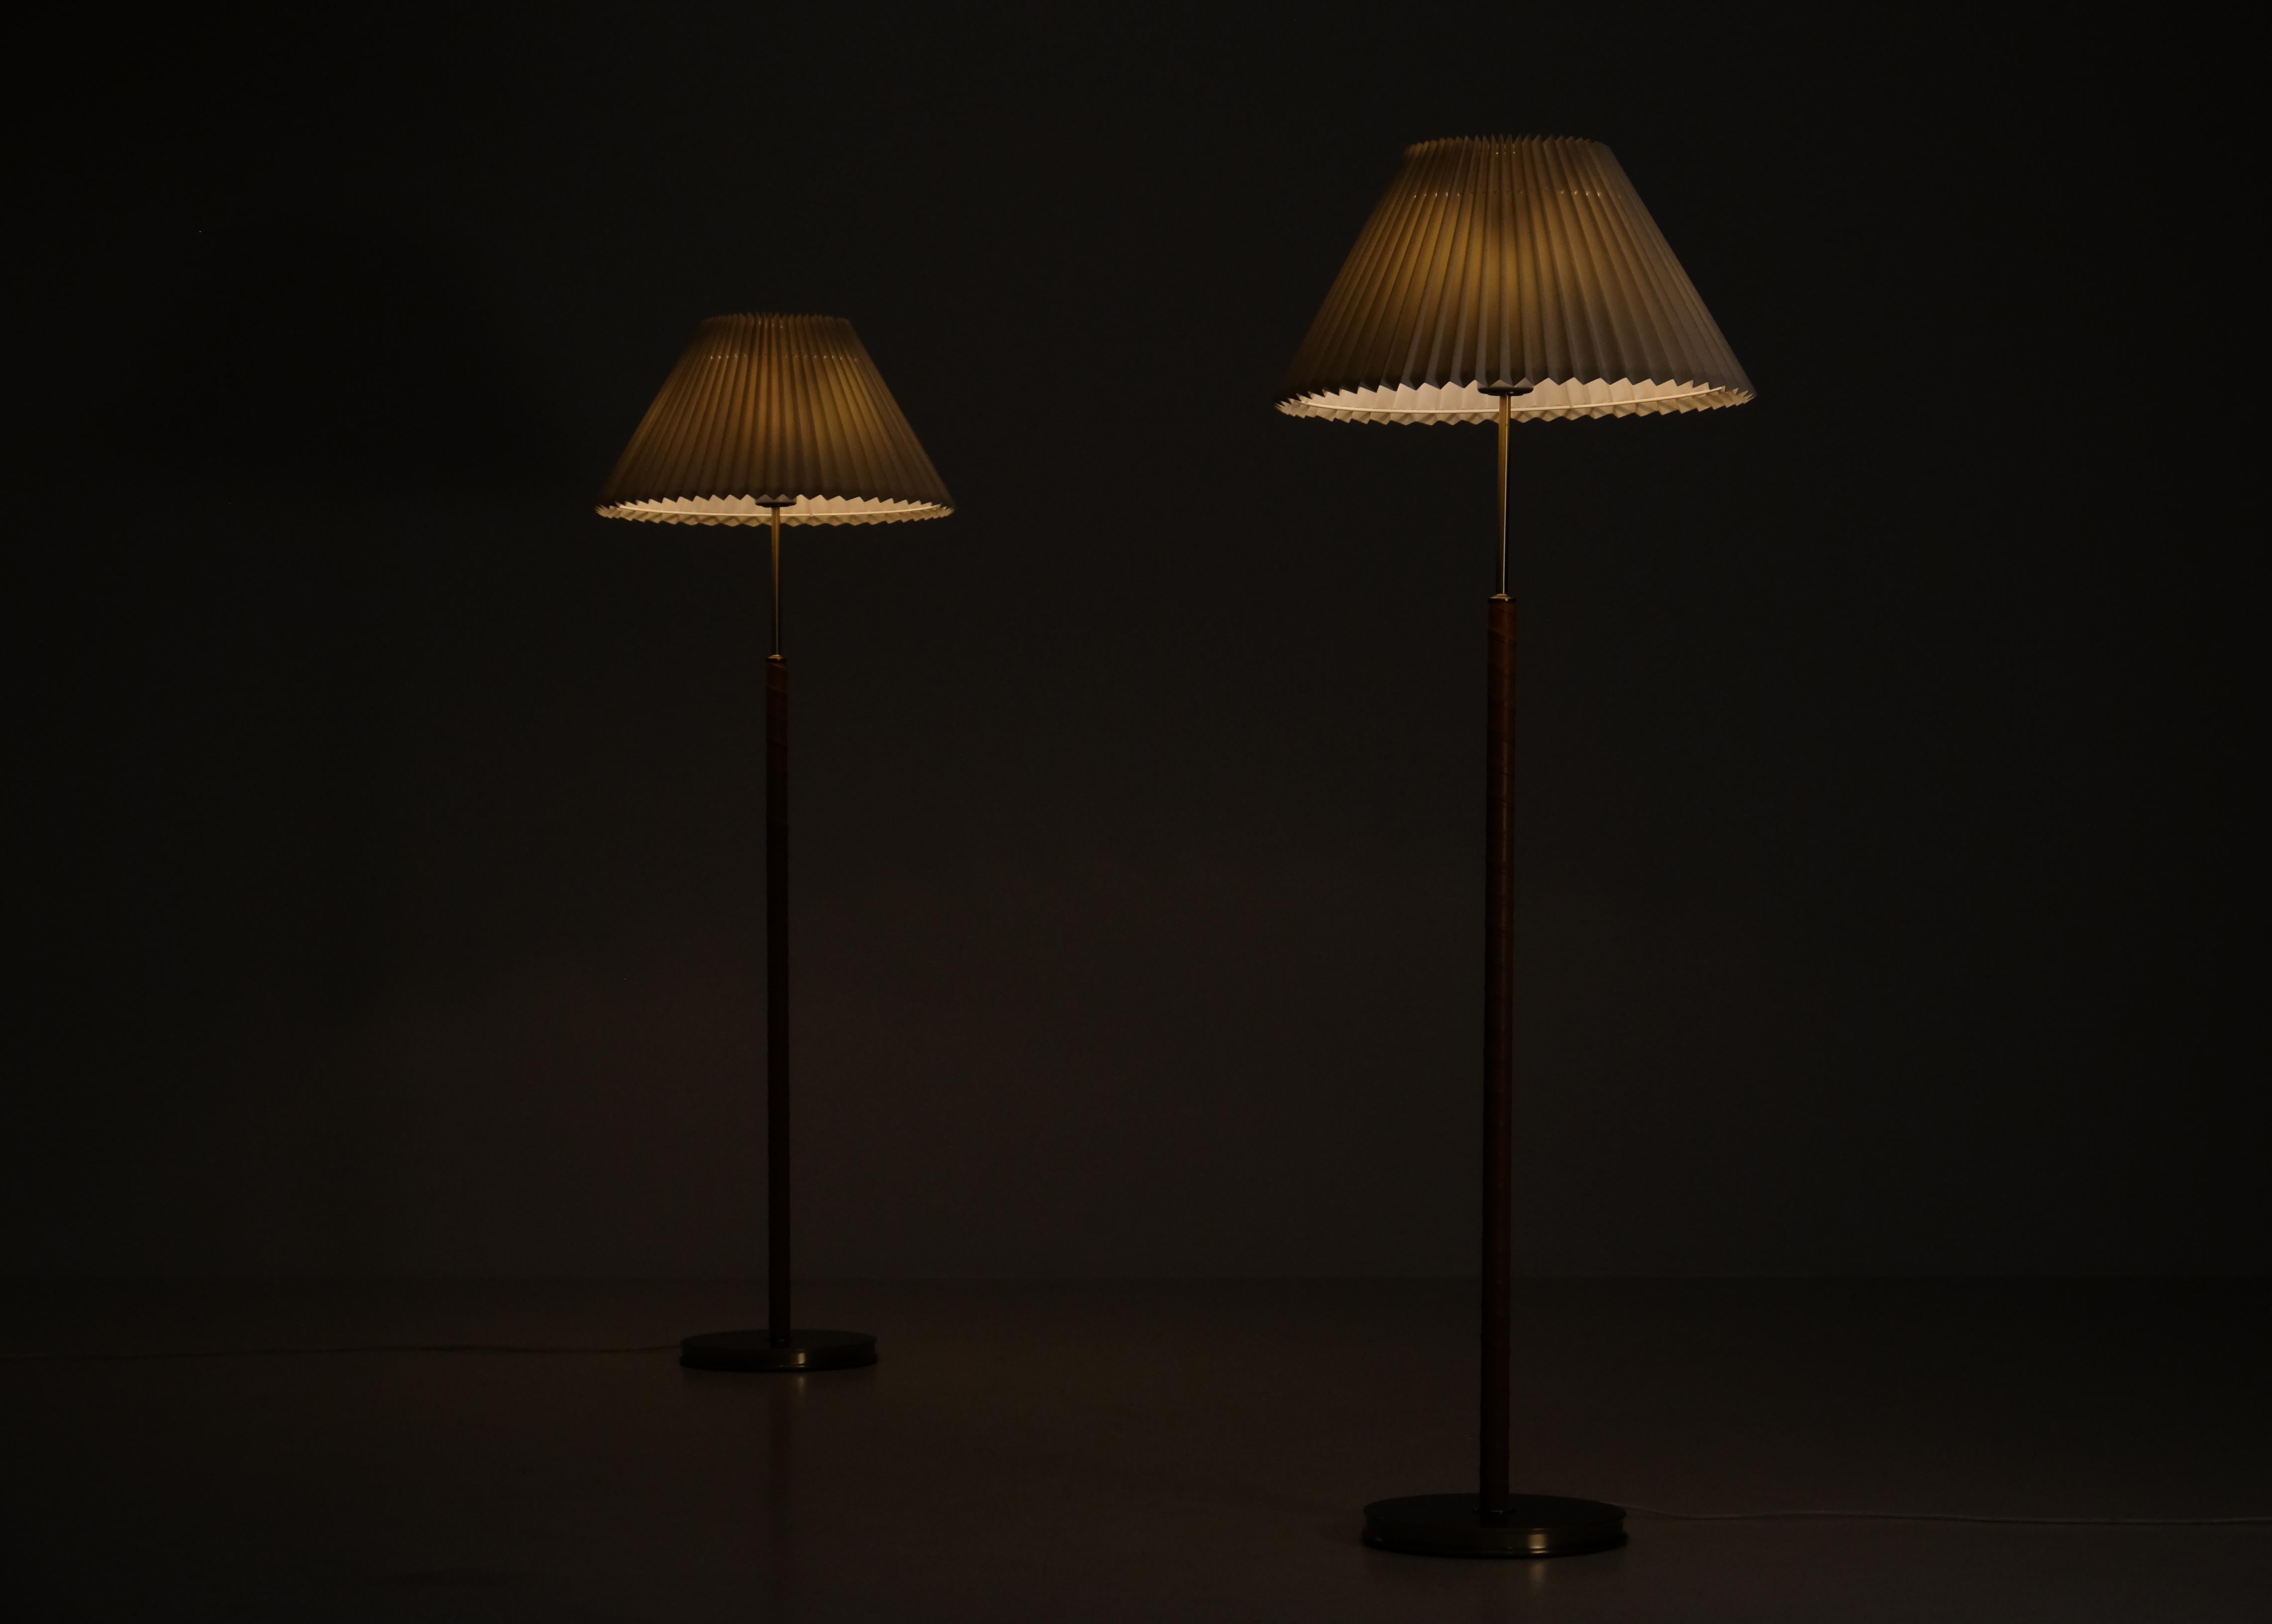 Paire disponible. Conçu par Josef Franks, modèle 2148, produit par Svenskt Tenn.
Avec 4 lampes chacune, contrôlées par deux interrupteurs discrets, permettant deux ambiances lumineuses différentes. 
Avec un abat-jour conique en tissu ivoire sur